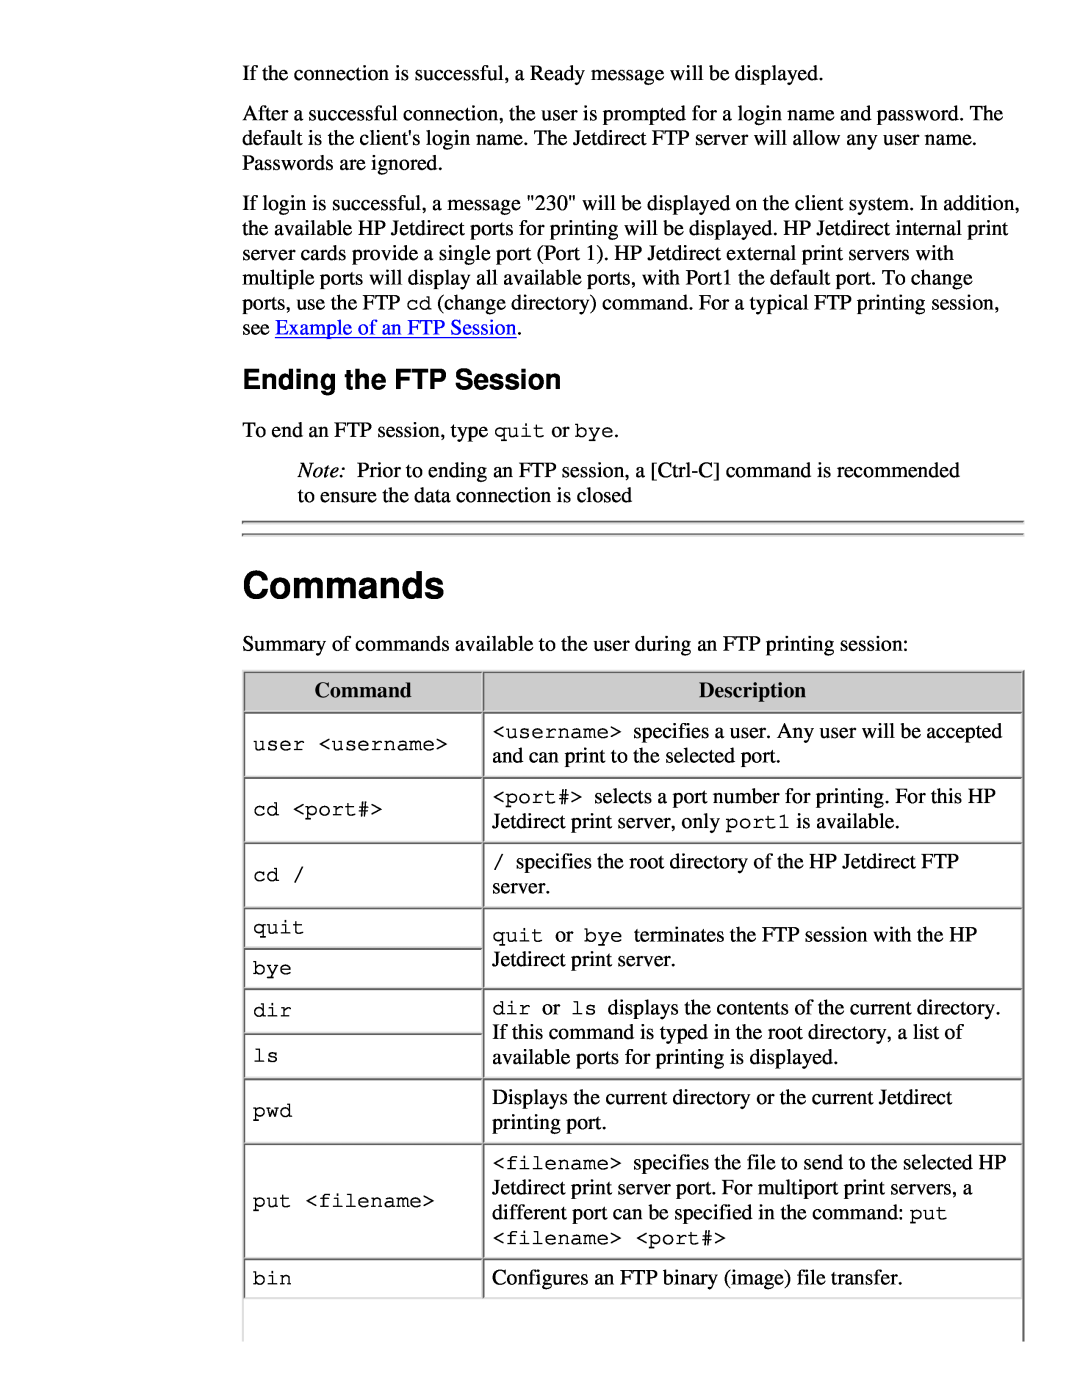 HP 175X, 310X manual Commands, Ending the FTP Session, Description 